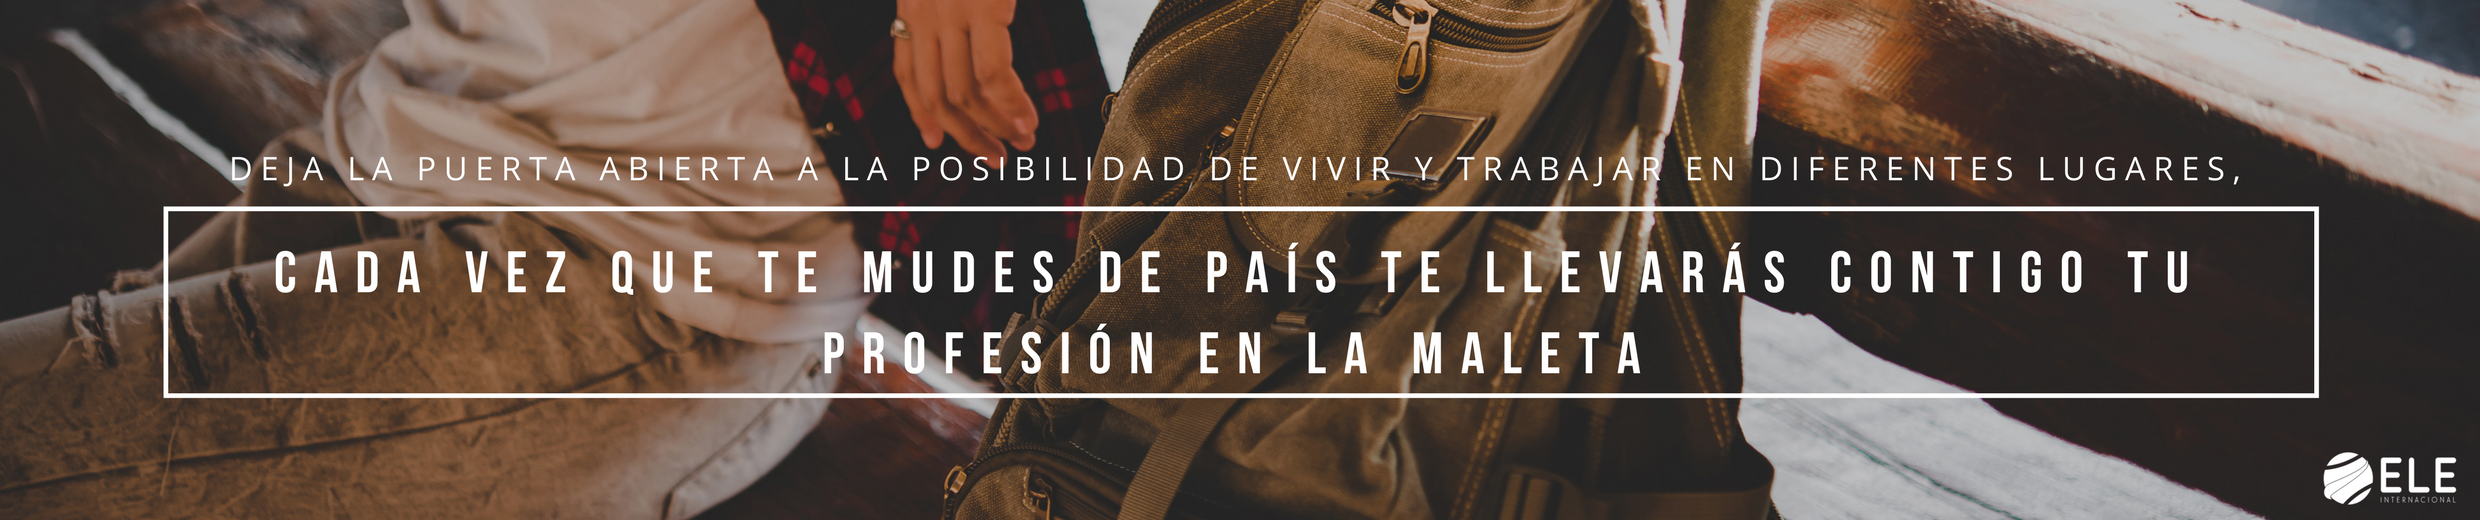 Viajar y ser profesor de español. Una profesión en la maleta que te permitirá conocer más mundo y nuevas culturas. #spanishteacher #claseele